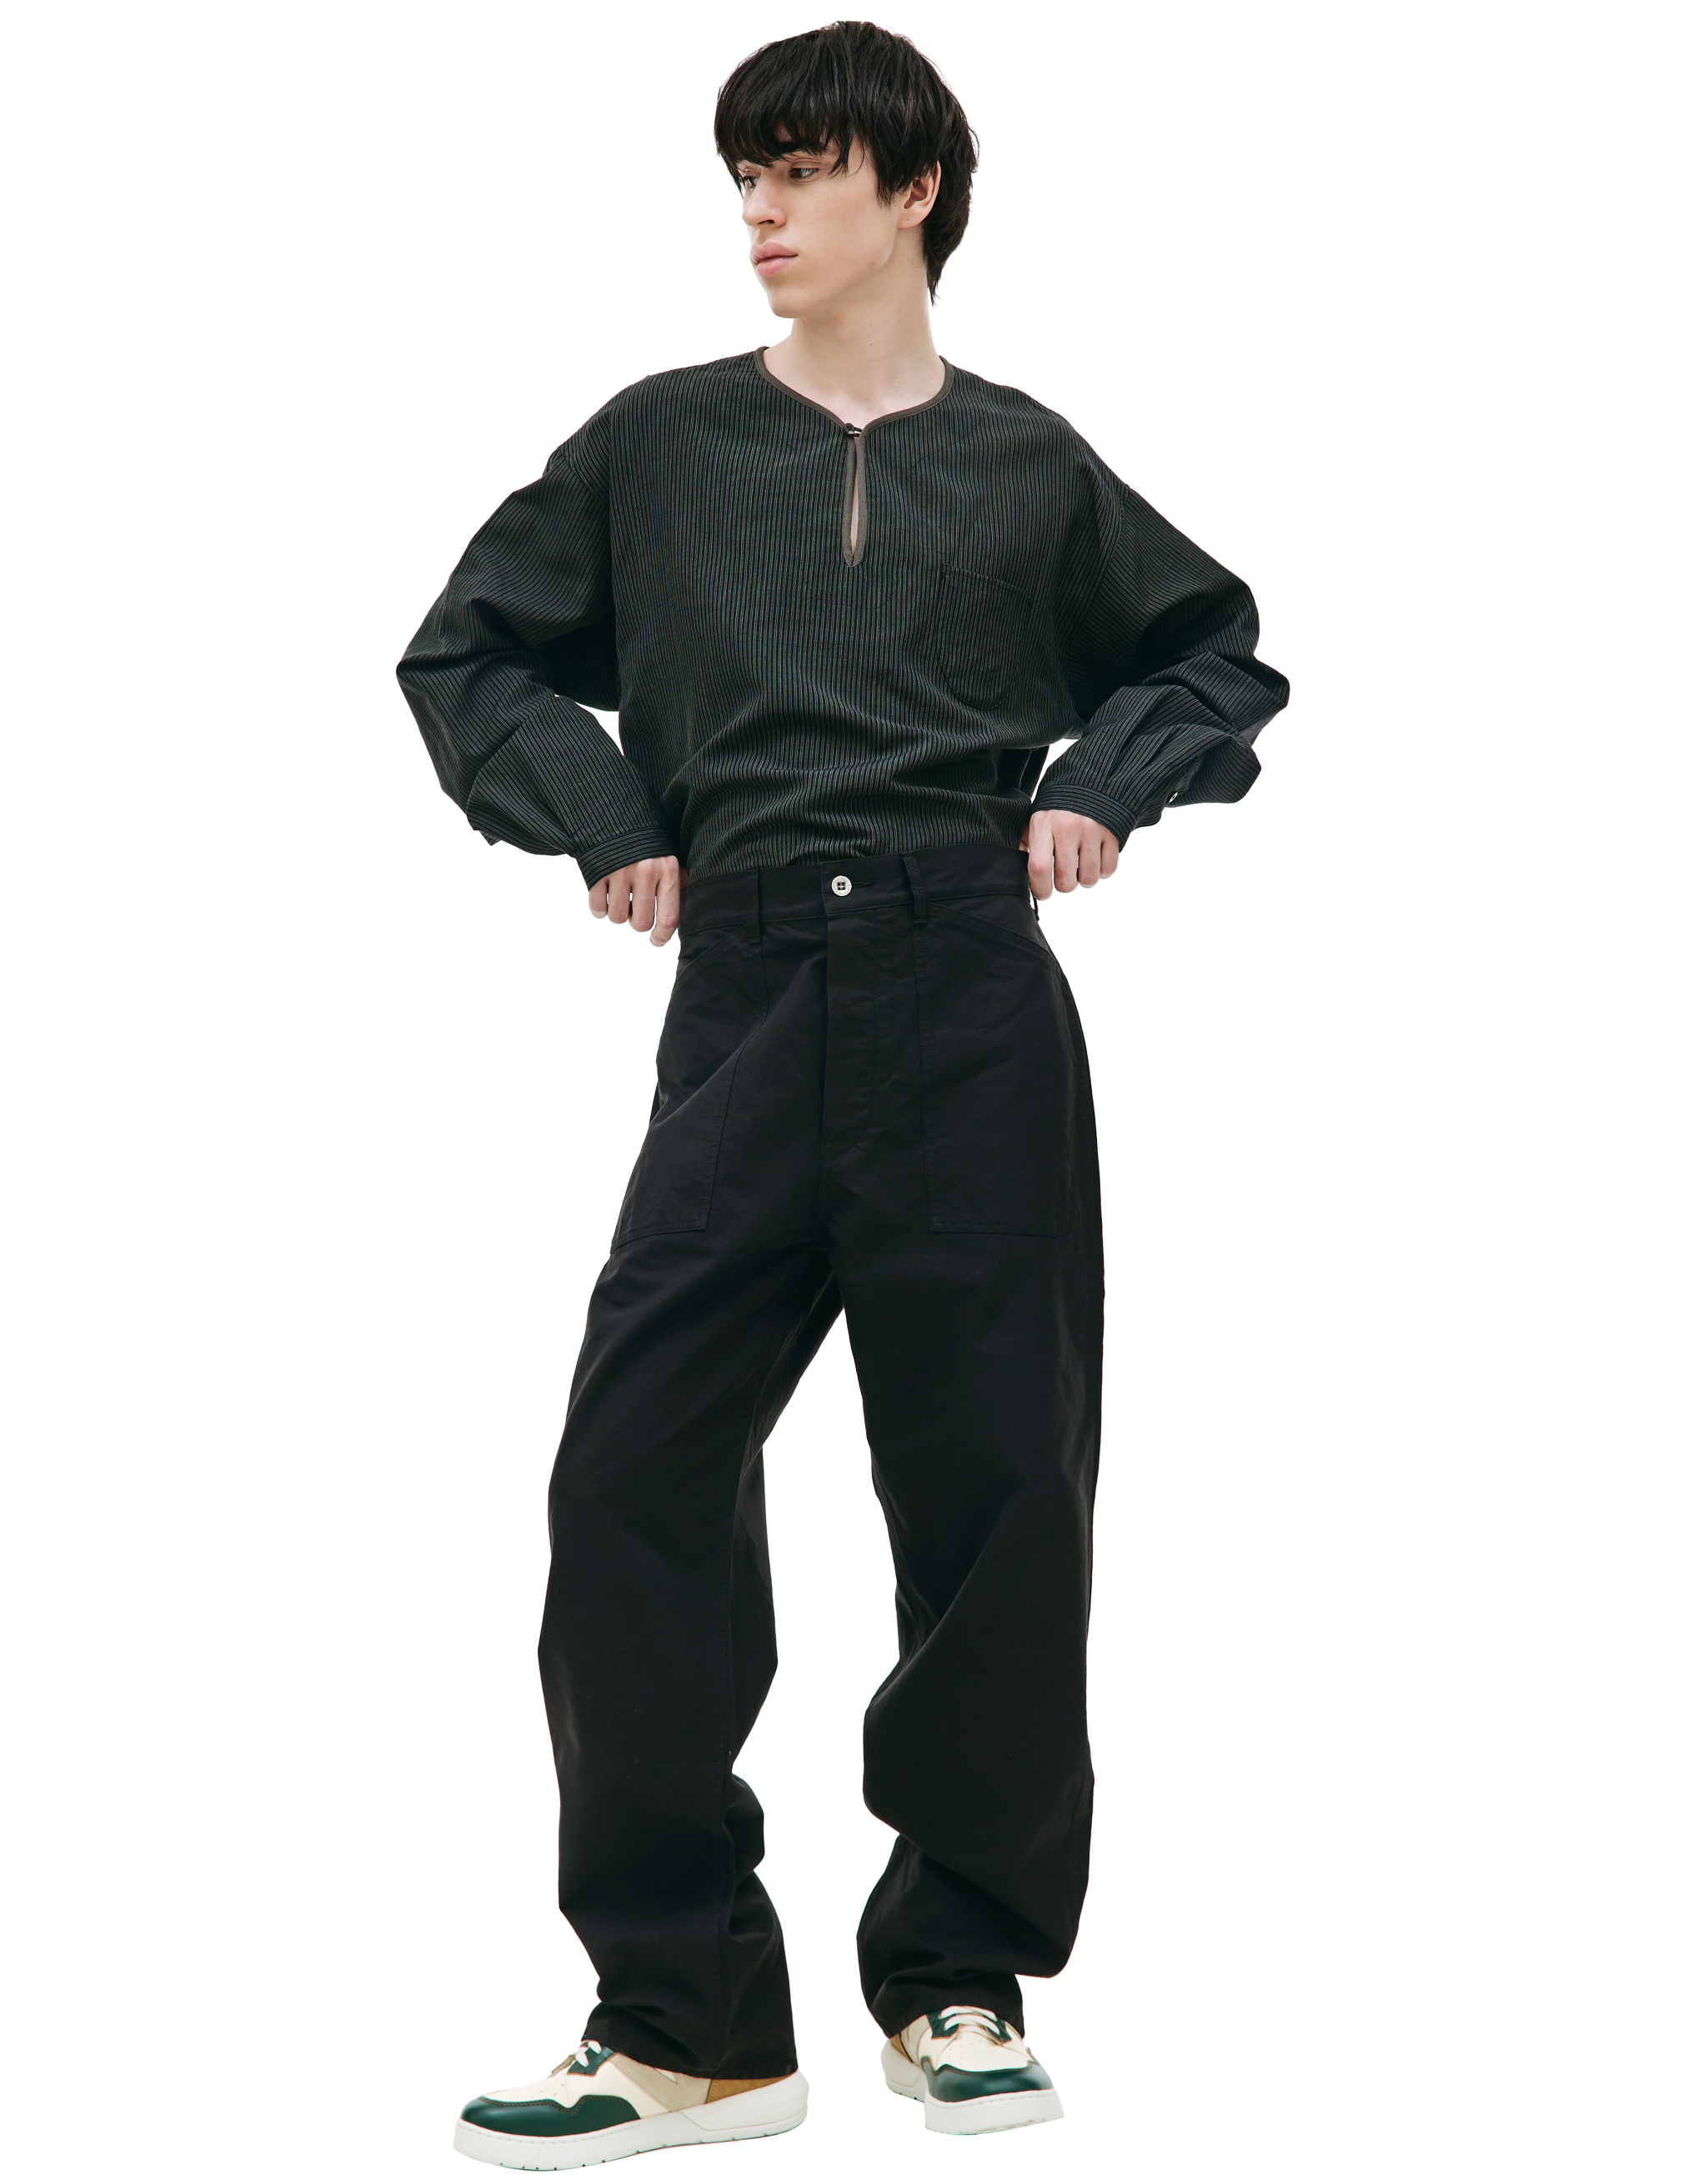 Черные брюки Carpenter с накладными карманами visvim 0123105008004/BLACK, размер 4